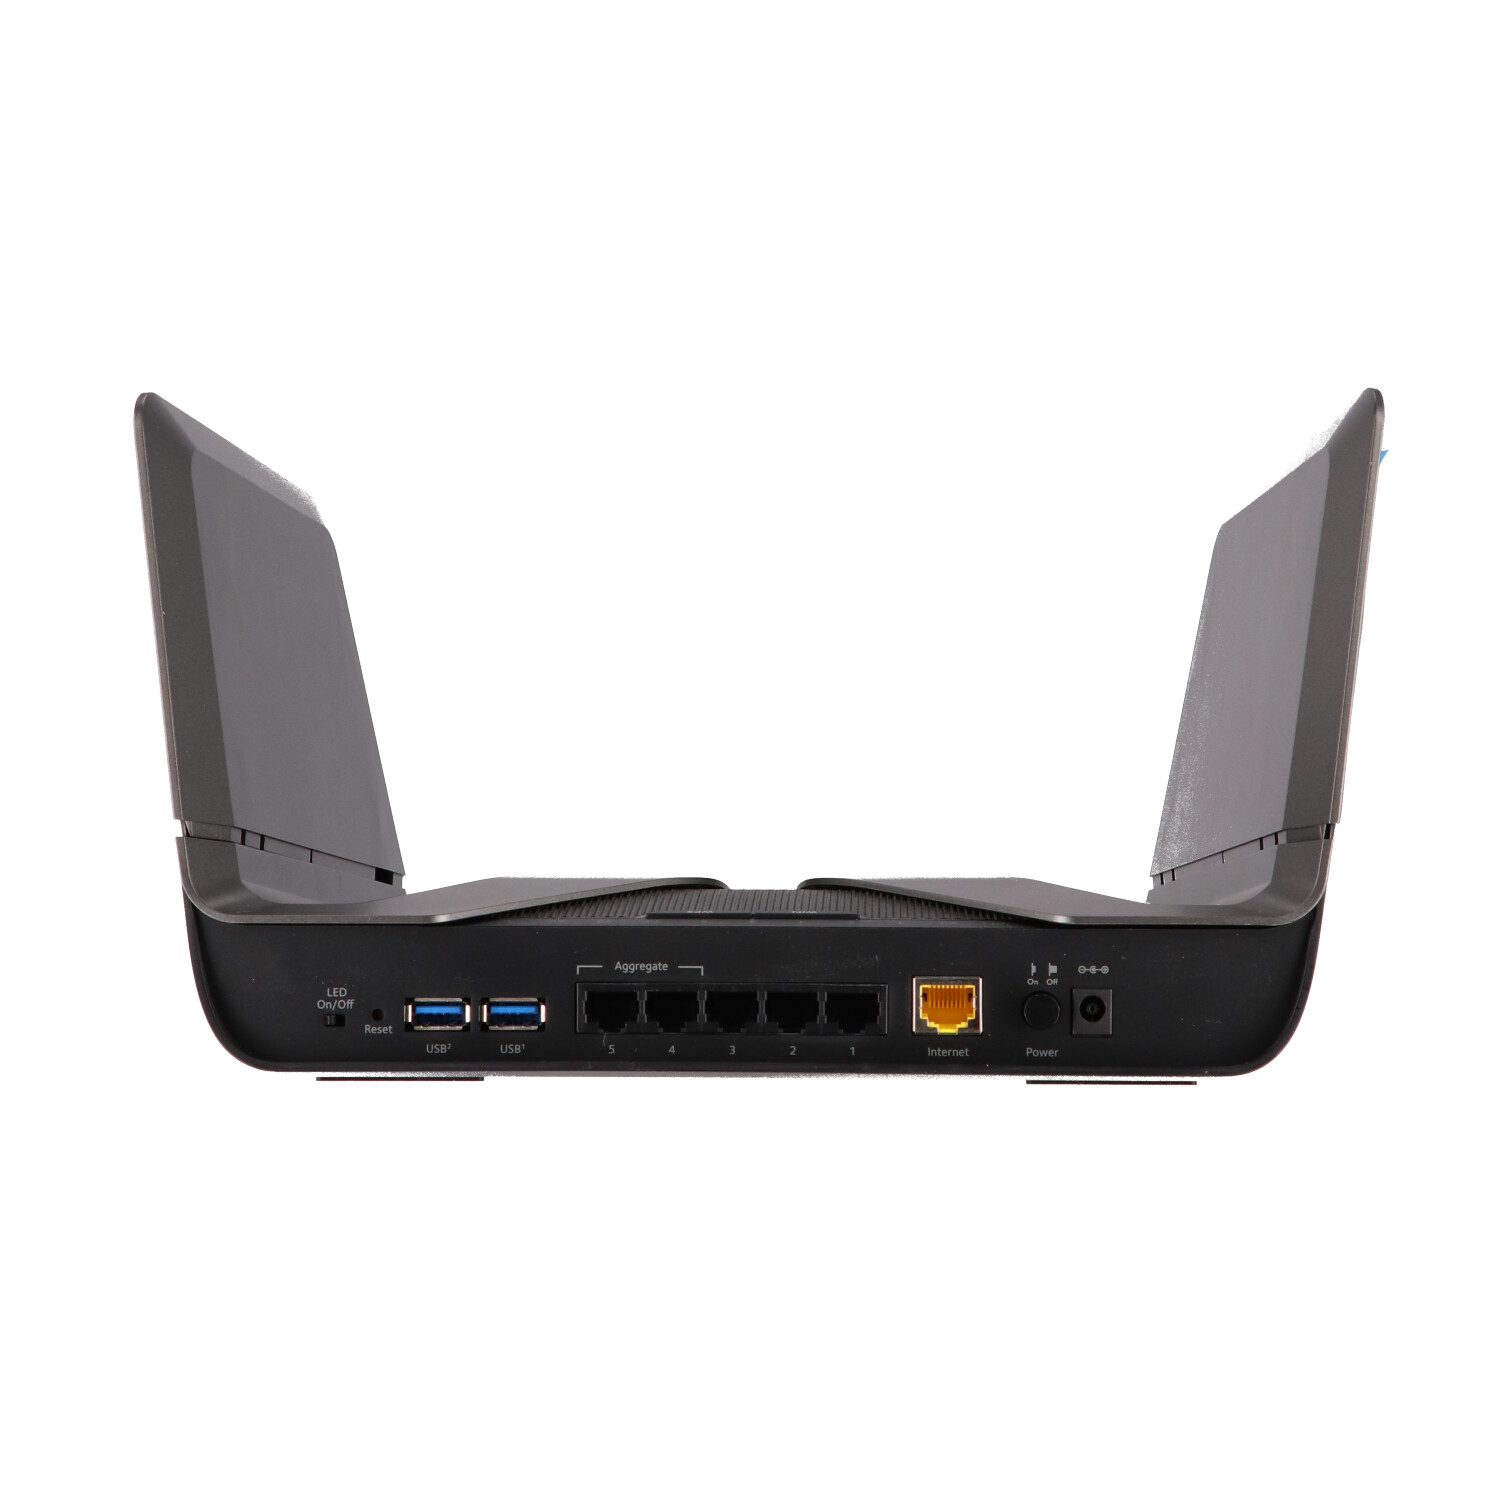 メーカー生産終了品 ネットギア NETGEAR WiFi ルーター 無線LAN 11ax (WiFi6) AX6000 